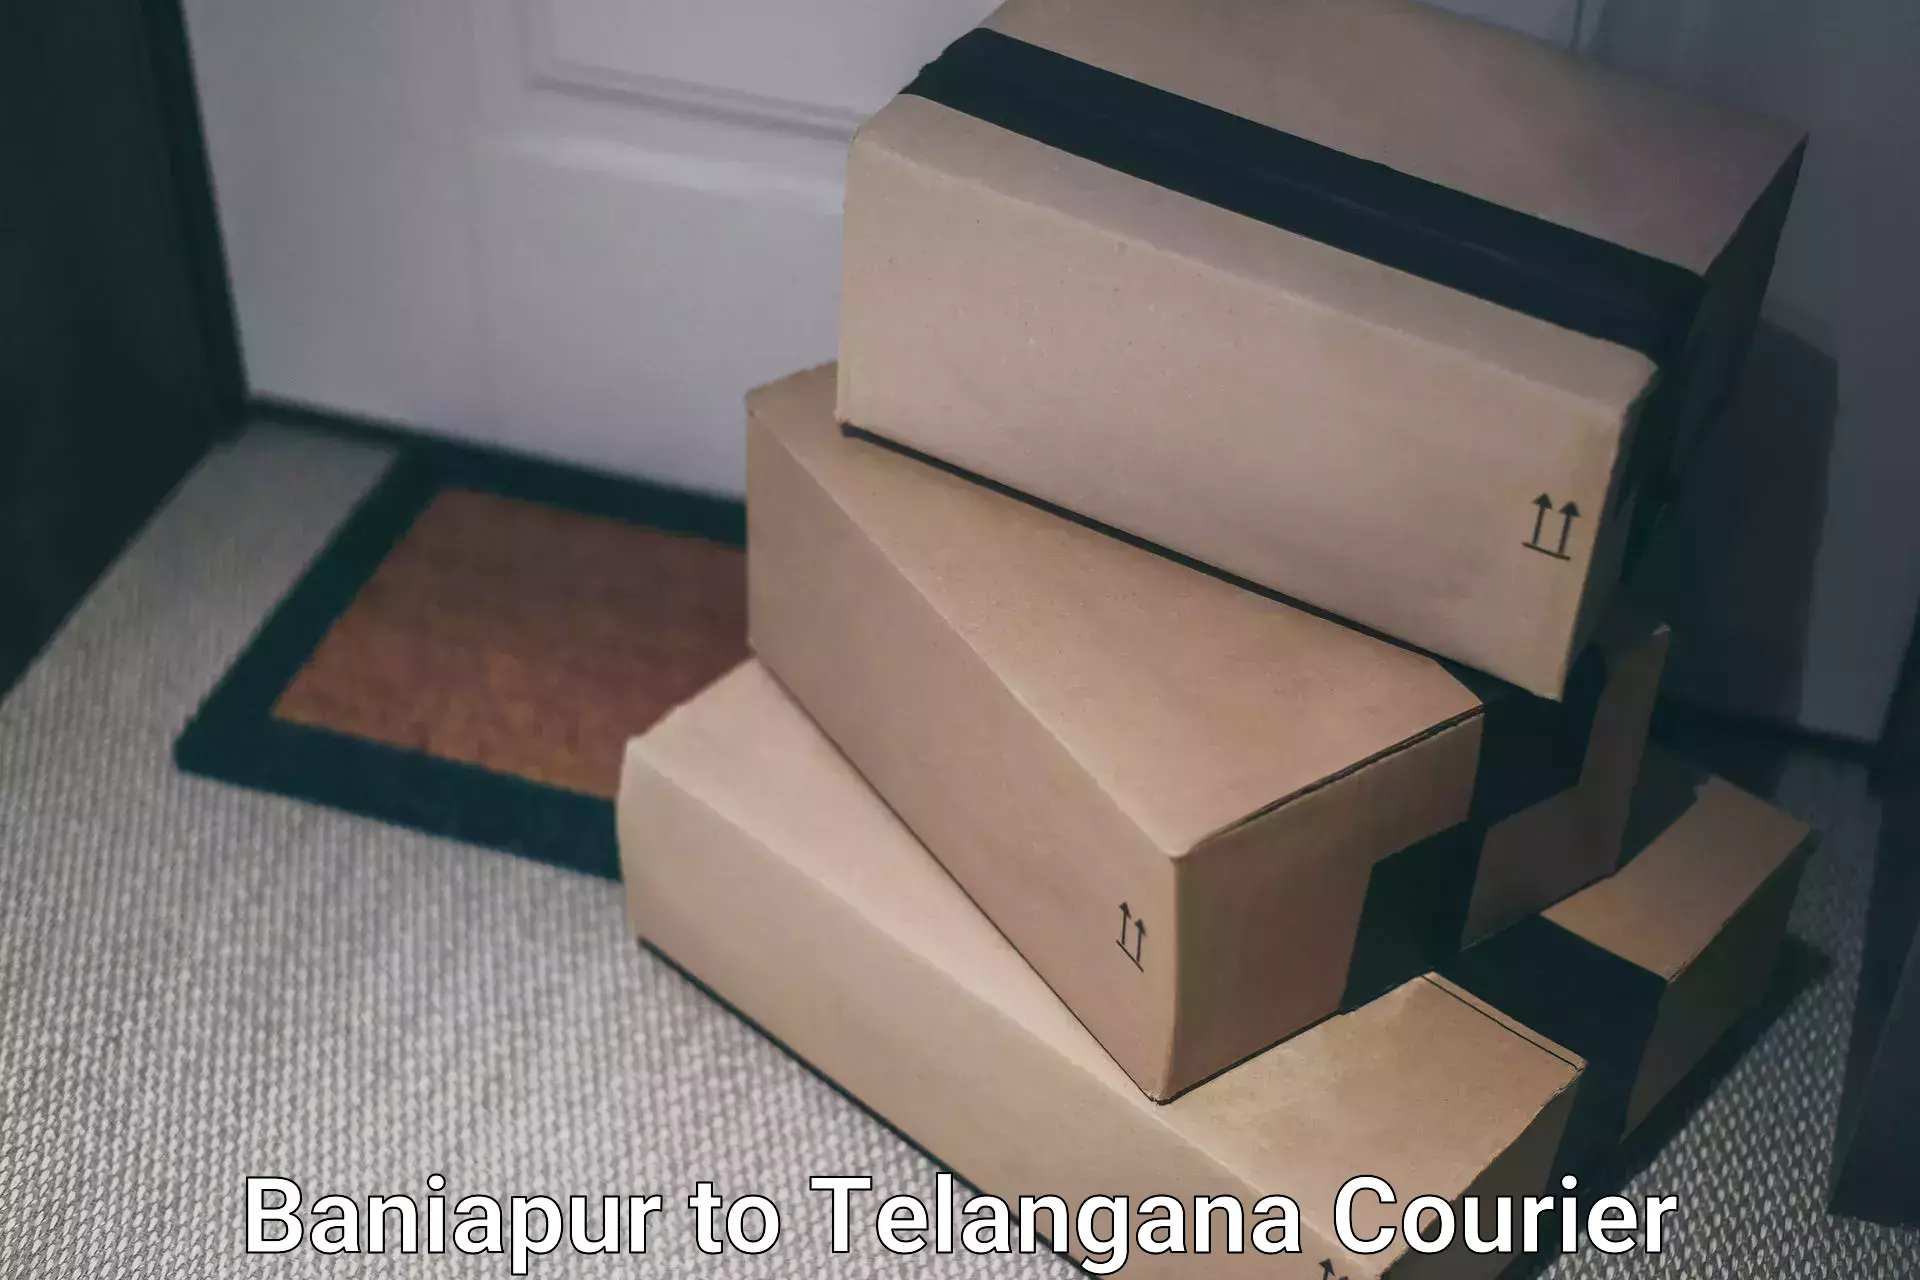 Premium courier services Baniapur to Telangana